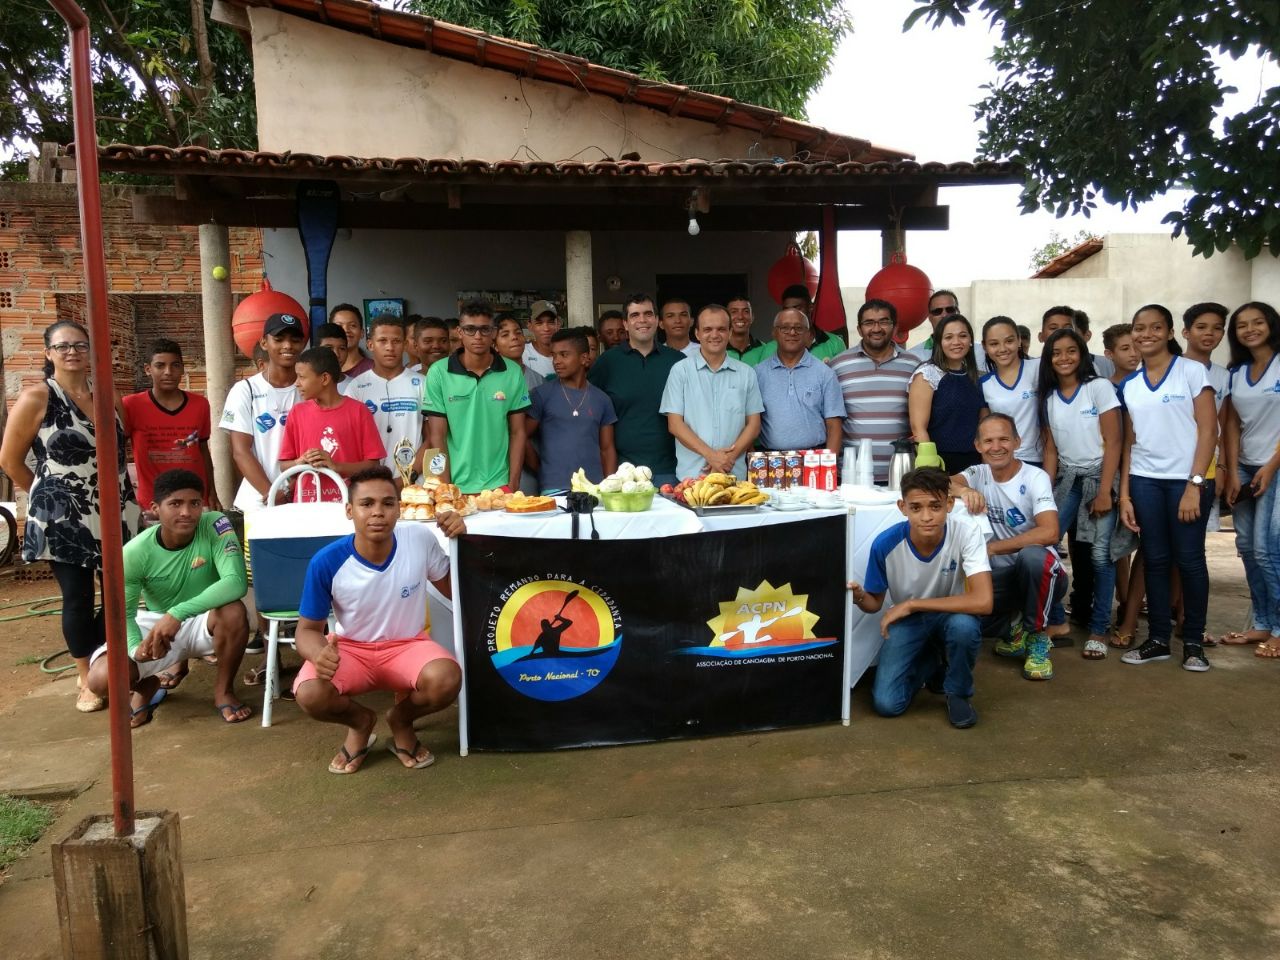 Prefeito Joaquim Maia participa de café da manhã com equipe de canoagem portuense e reforça parceria 2